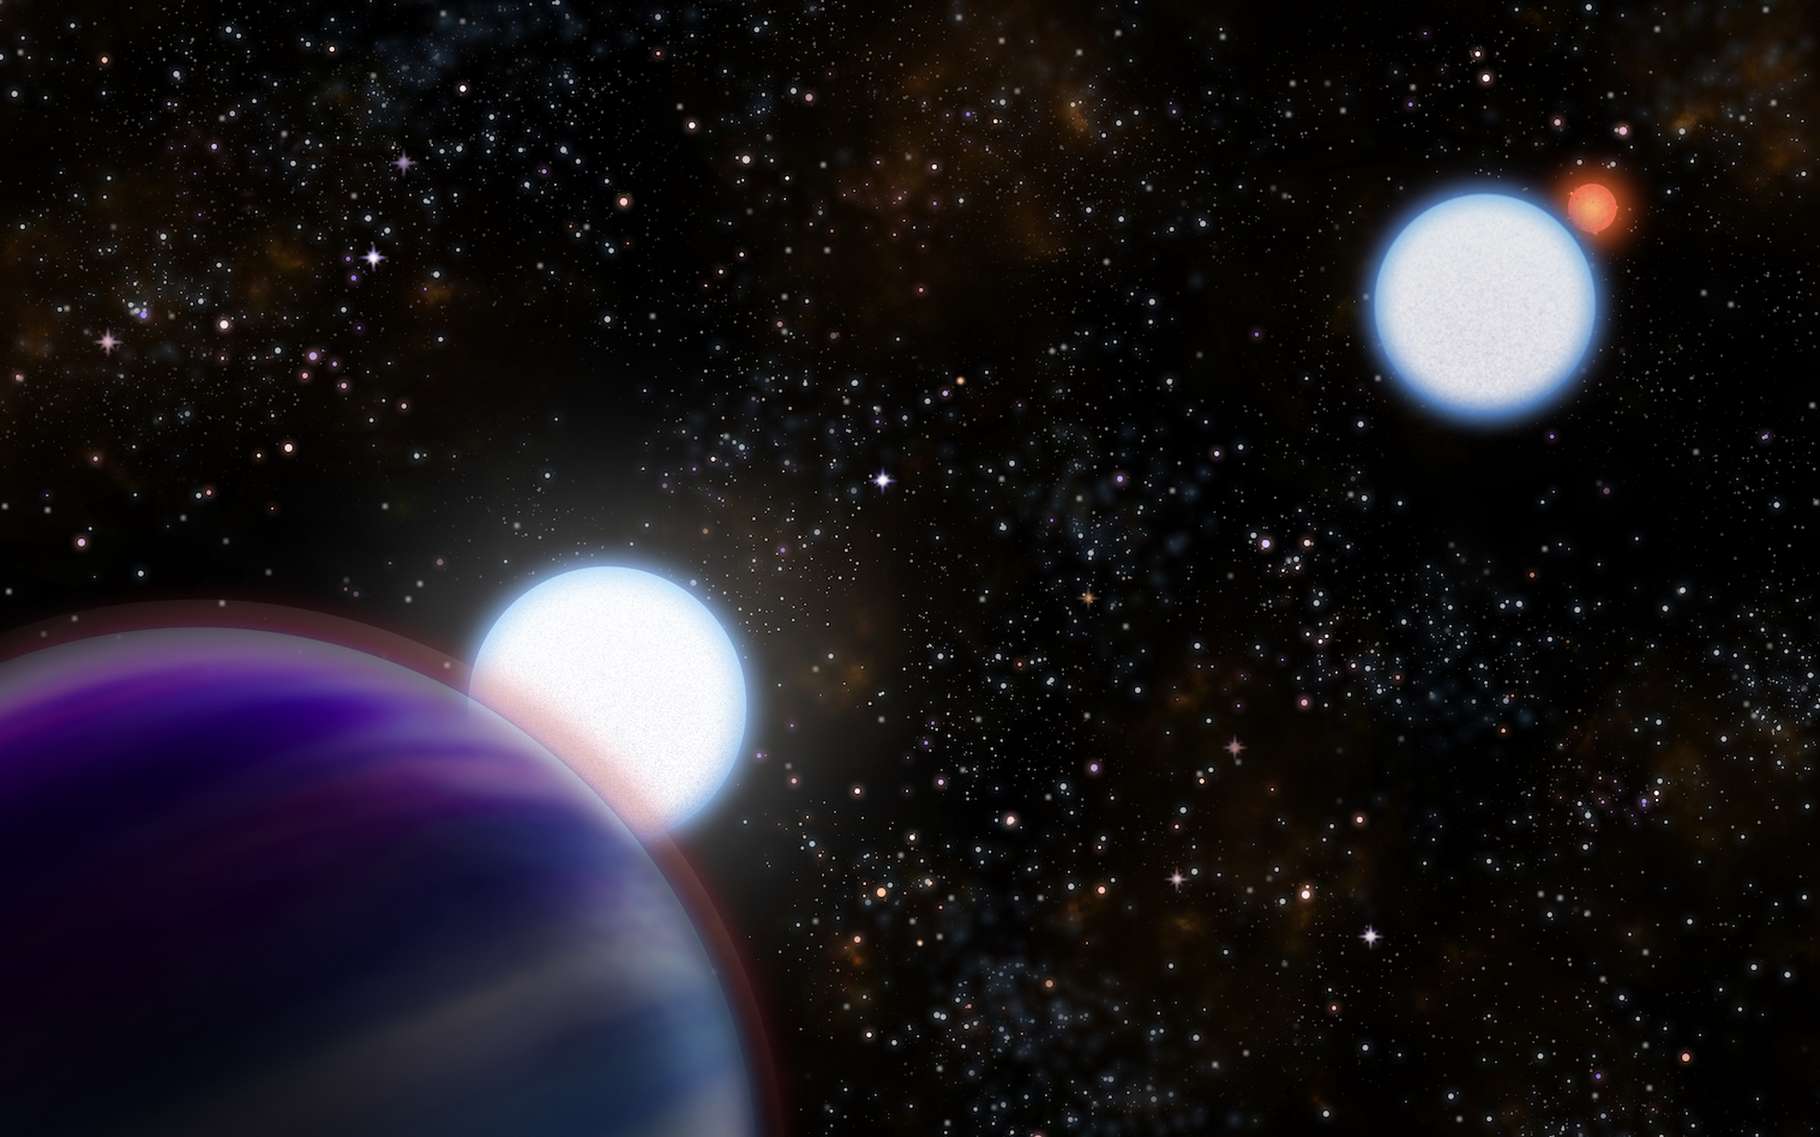 Une vue d’artiste du système Kepler-13 tel que révélé par des observations menée à l’observatoire Gemini North. Les deux étoiles (A et B) sont de grandes étoiles bleuâtres massives (centre) avec le « Jupiter chaud » en transit (Kepler-13b) devant l’étoile A au premier plan (coin gauche). La compagne naine rouge de l’étoile B à faible masse est visible en arrière-plan à droite. © Joy Pollard, Gemini Observatory, NSF, Aura